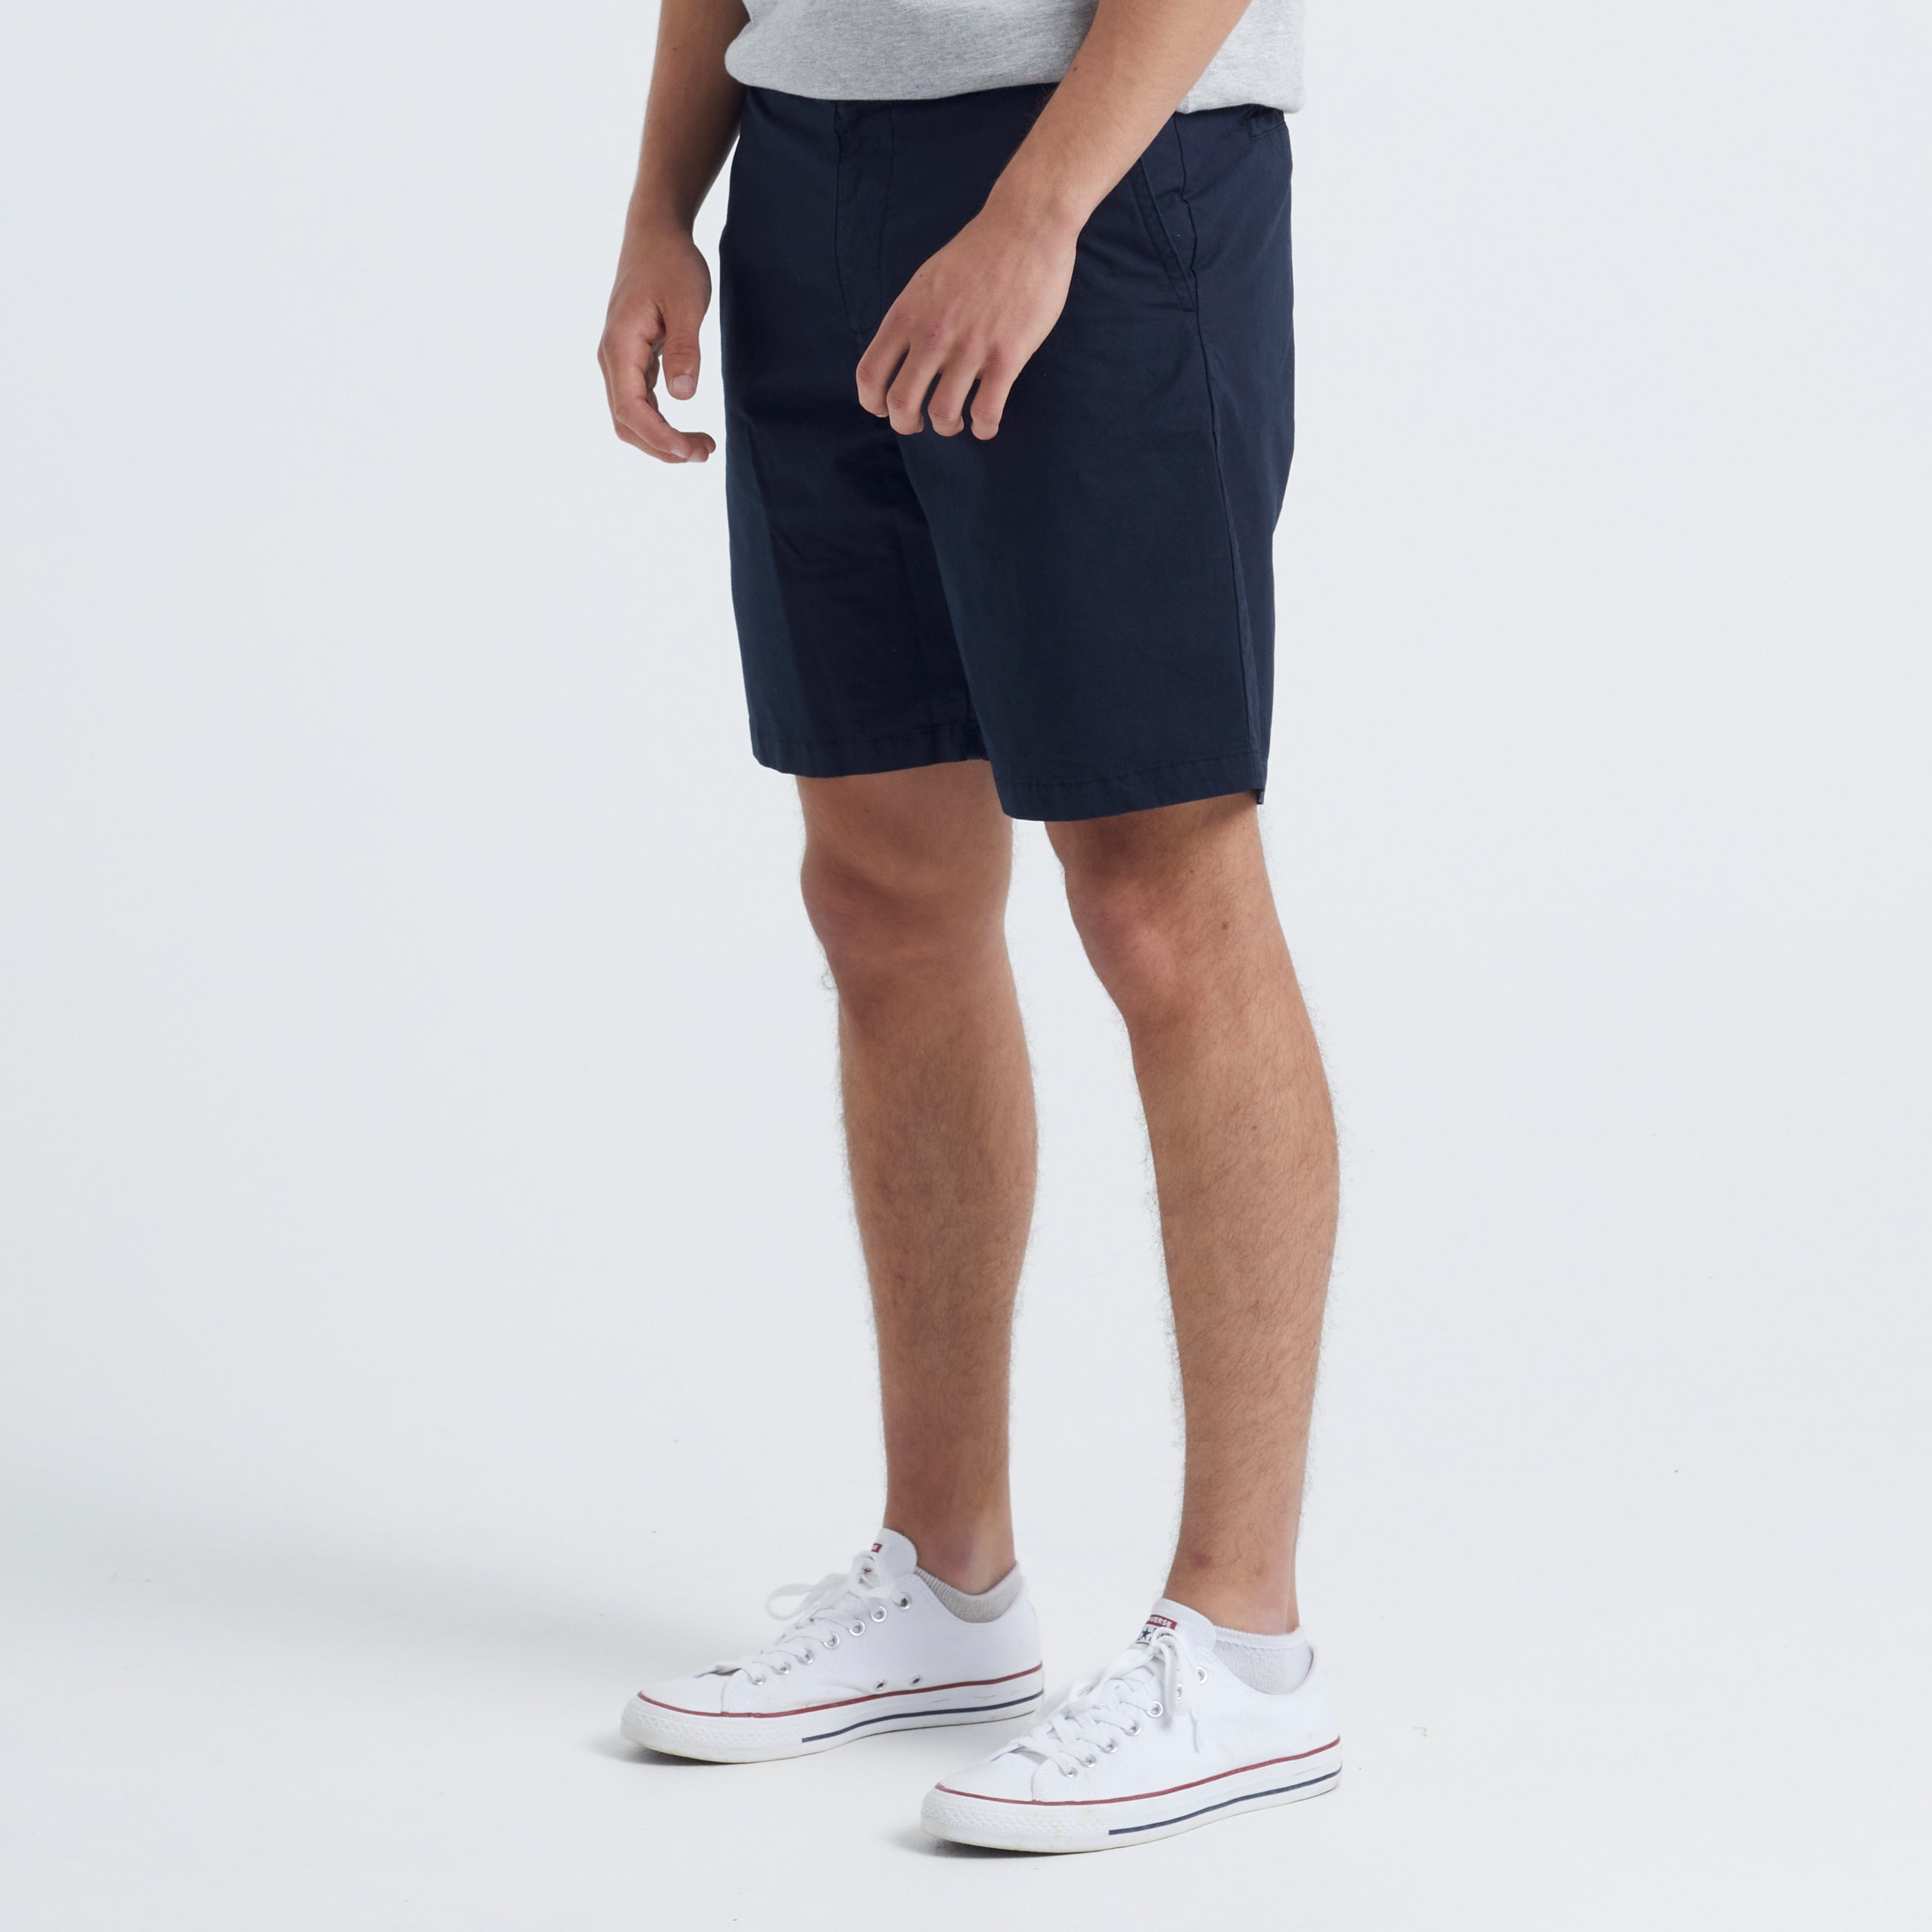 Se Gideon Light Cotton Shorts - Navy Blazer - M / Navy Blazer hos bygarmentmakers.dk